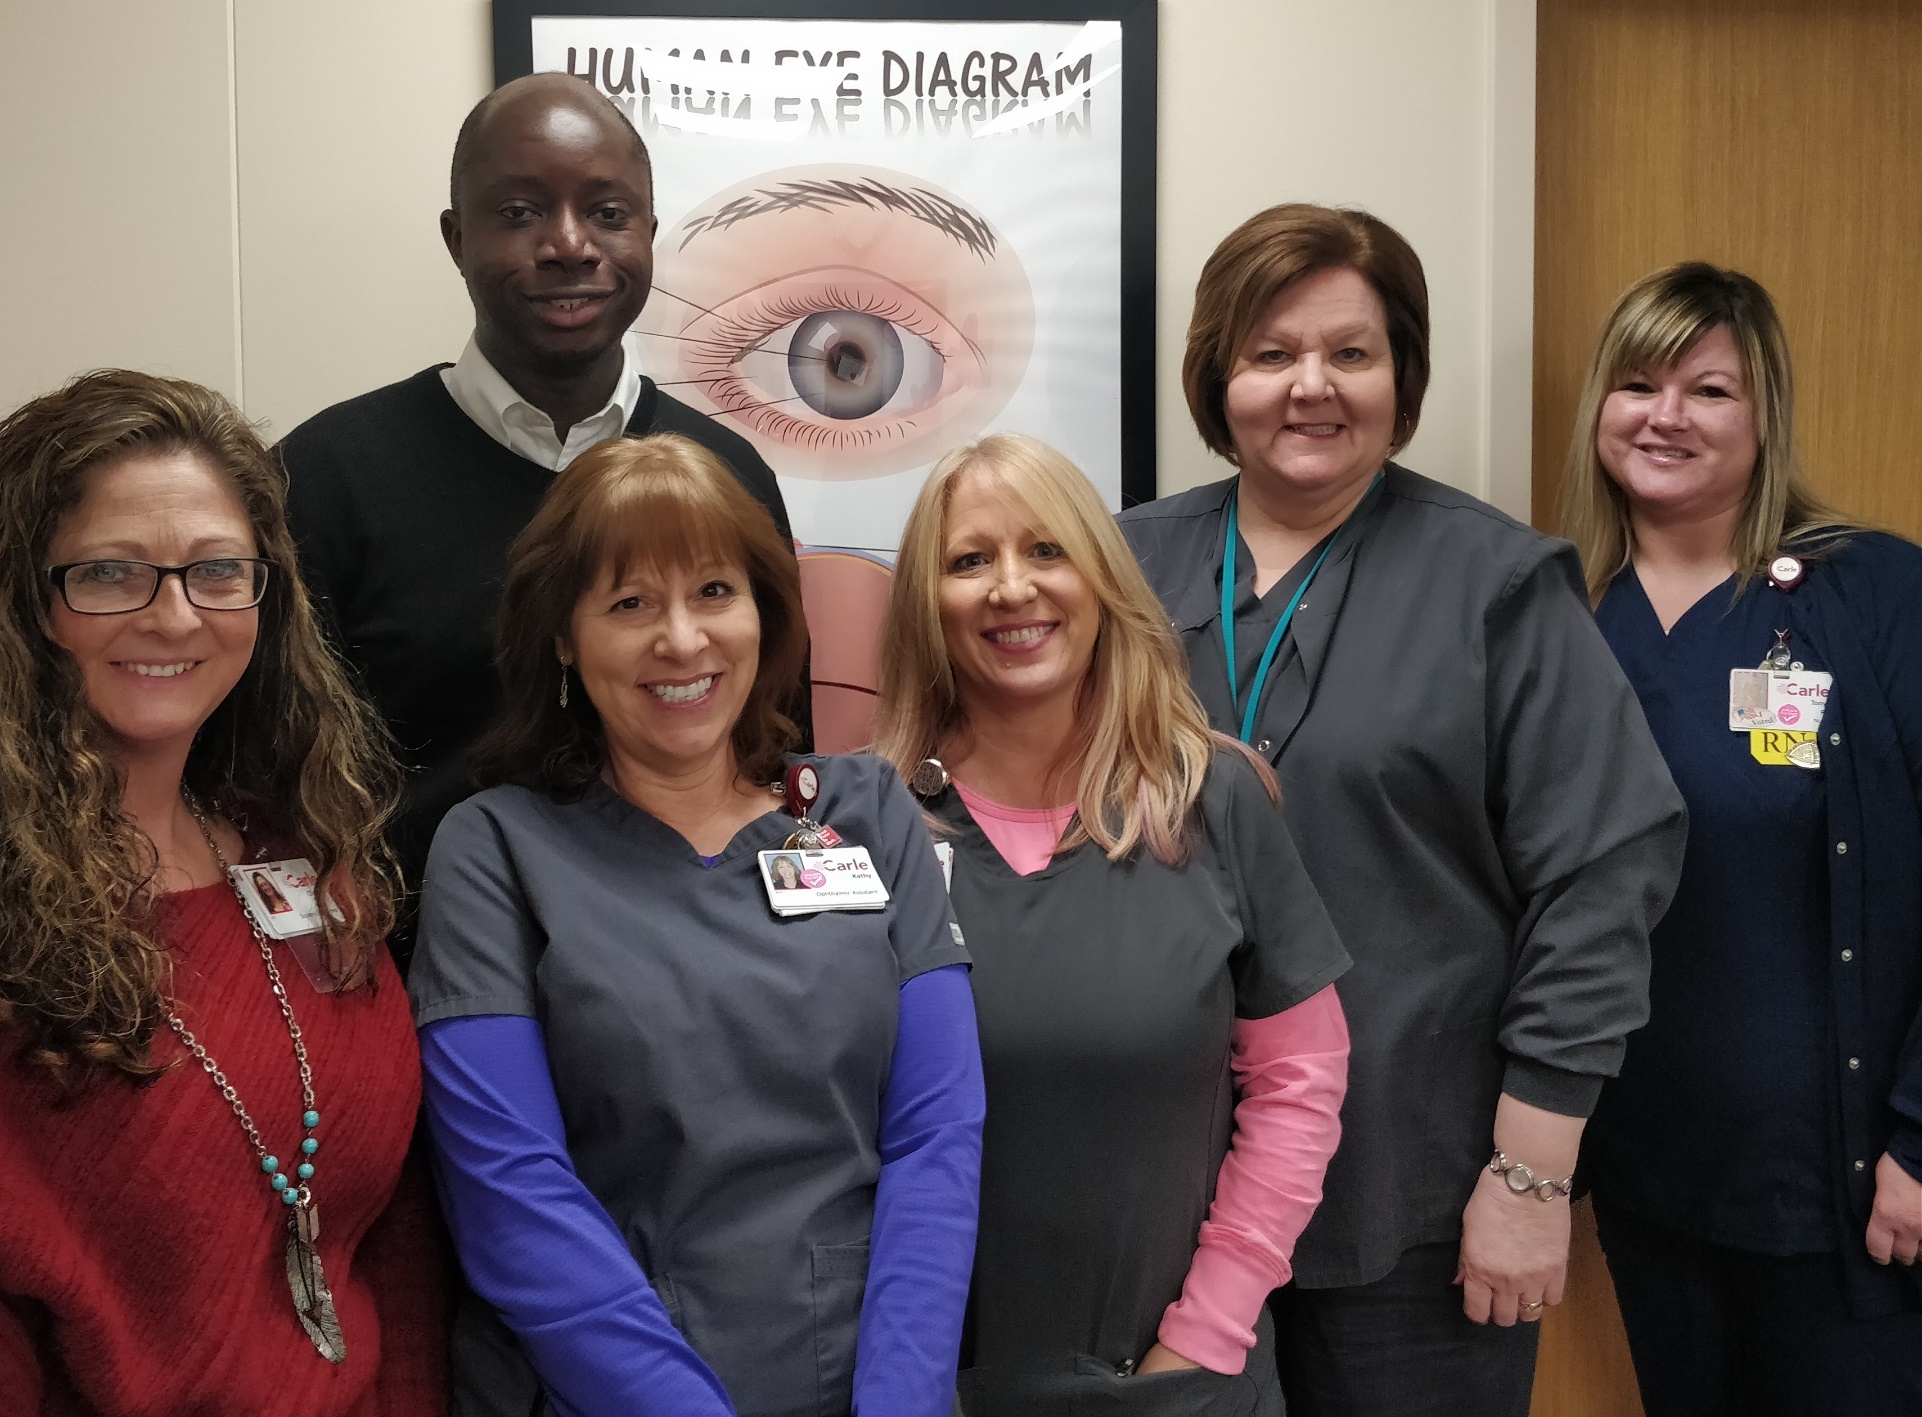 Dr. Cham, team restore advanced vision care in, around Danville